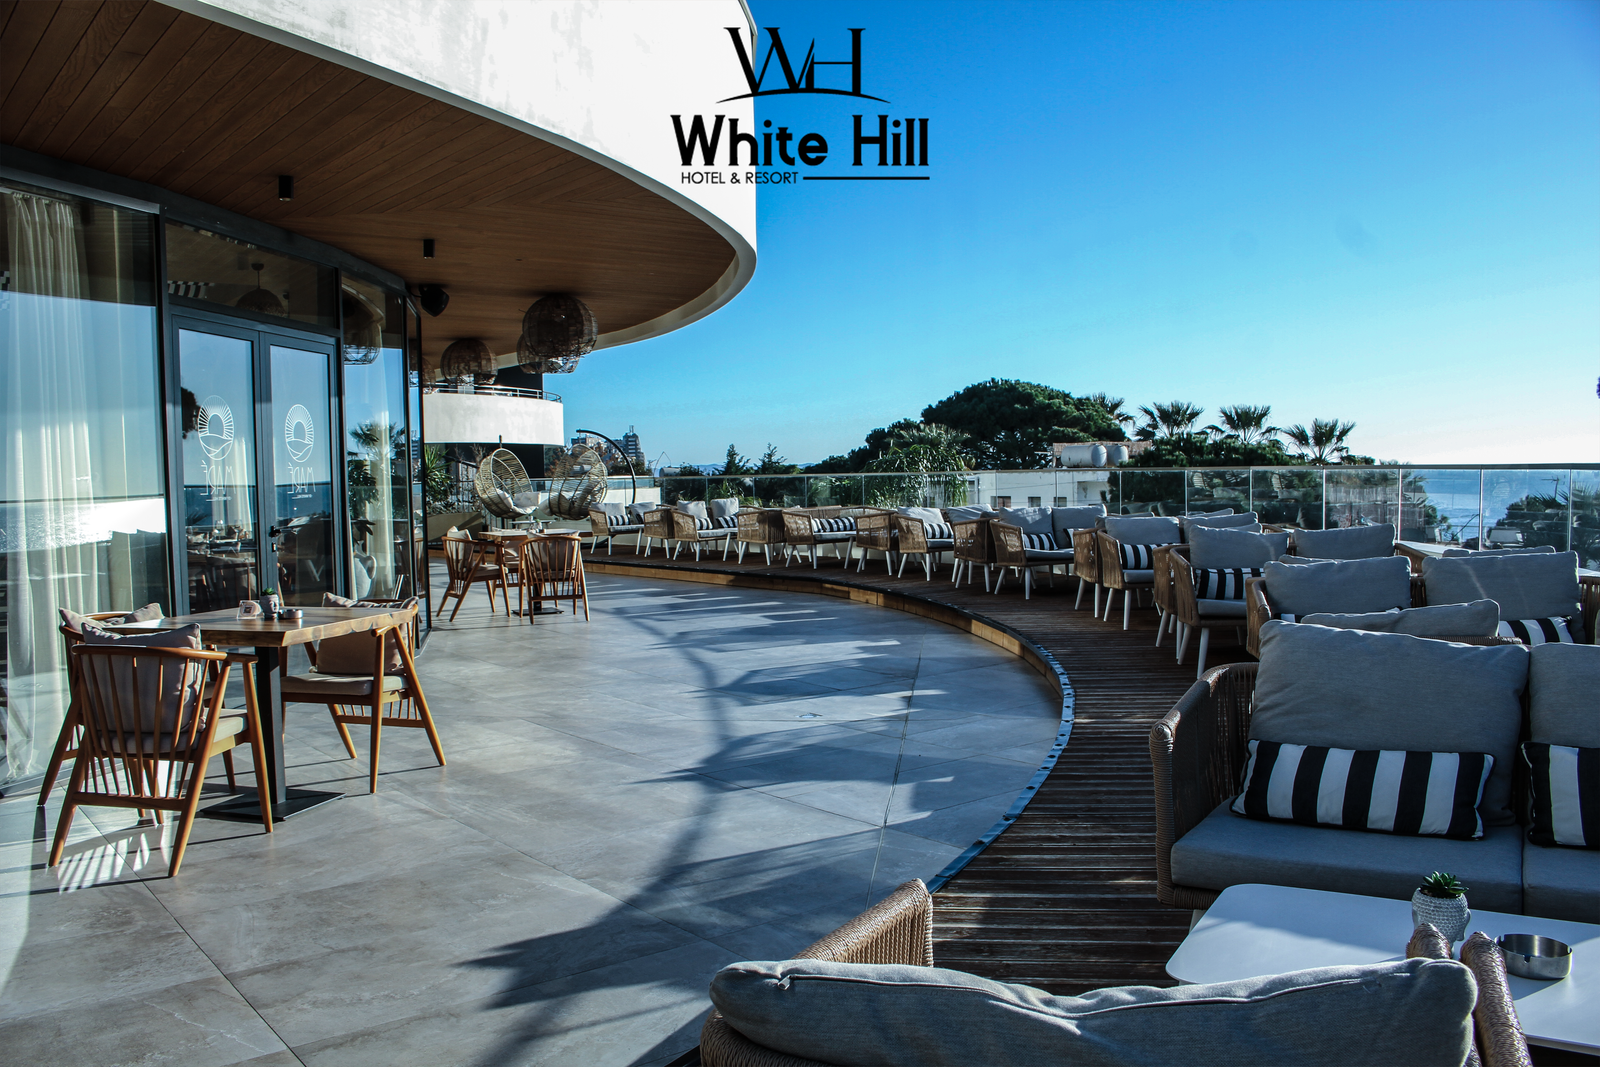 White Hill Resort është një prej hoteleve më luksoze dhe të mahnitshme në bregdetin e Durresit. Ky resort i veçantë ndodhet në një ambient të pazakontë, ku bukuria e natyrës dhe komoditeti takohen në një harmoni tërheqëse për të gjithë vizitorët. Dhomat e hotelit në White Hill Resort janë të dizajnuara me kujdes për të siguruar një përvojë të jashtëzakonshme për udhëtarët. Secila dhomë është e përshtatur me elemente moderne, ndriçim të natyrshëm dhe pamje të mrekullueshme drejt detit ose gjelbërimin e mrekullueshëm të natyrës. Dhomat e hotelit ofrojnë një gamë të gjerë të shërbimeve të larta, duke përfshirë krevate të rehatshme, banjot private të mëdha, ajër të kondicionuar, mini-bar, televizorë të shkëlqyeshëm dhe akses në internet pa kufi. Për më tepër, vizitorët kanë mundësi të zgjedhin mes dhomave me pamje drejt detit ose atyre me pamje të bukur nga pyjet dhe kopshtet e rrethit. Në shtëpinë e restorantit, të cilën e shpërndanë disa restorante, që nga ato me pamje të mrekullueshme të detit deri te ato të specializuara në kuzhinën lokale dhe ndërkombëtare, vizitorët mund të shijojnë kuzhinën e shkëlqyer dhe shërbimin e shkëlqyer. Përveç kësaj, White Hill Resort ofron edhe shërbime shtesë si pishina e jashtme, qendra fitnesi, aktivitete sportive në plazh, si dhe spa dhe qendra relaksimi për të ofruar një përvojë të plotë të stresit dhe relaksimit. Me një ambient të mrekullueshëm, shërbime të larta dhe pamje të mahnitshme, White Hill Resort në Durres është një destinacion i përjashtëm për udhëtimin tuaj në bregdetin e Adriatikut. Fix: +355 52 504 100 Cel: +355 69 313 66 66 Adresa: Rruga e Currilave, 2001, Durres, Albania Email: info@whitehillhotel.al Web: www.whitehillhotel.al Instagram: whitehill.hotel Facebook: White Hill Hotel